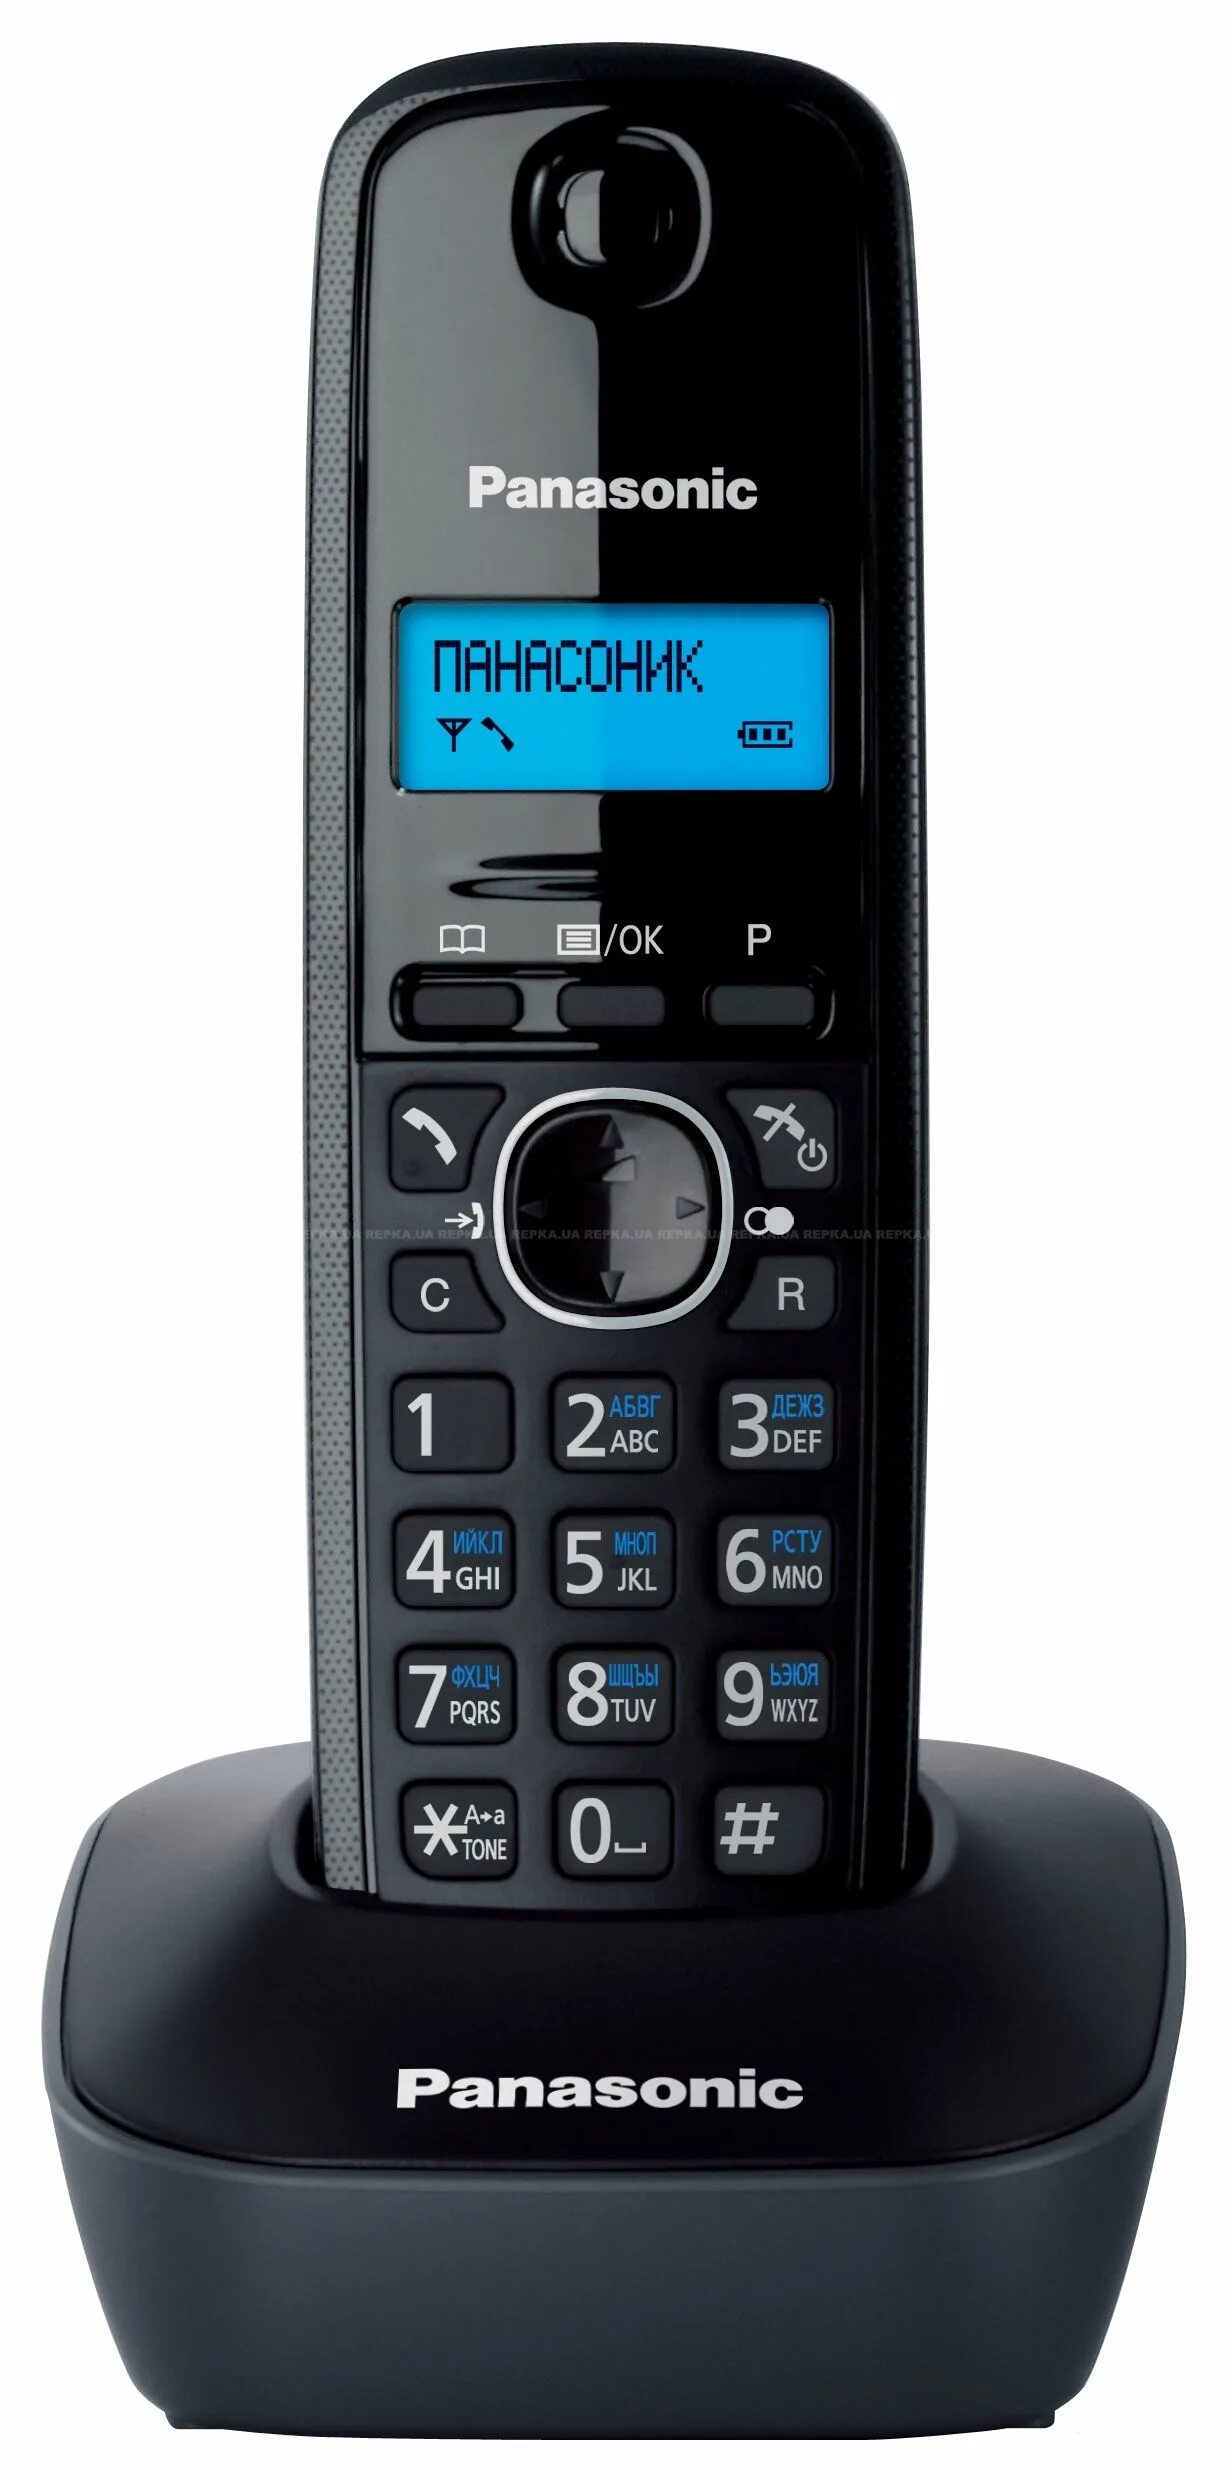 Радиотелефон Panasonic TG 1611ruh. Радиотелефон Panasonic KX-tg1611 серый. Телефон DECT Panasonic KX-tg1611ruh. KX-tg1611uah Panasonic DECT. Панасоник телефон домашний трубка